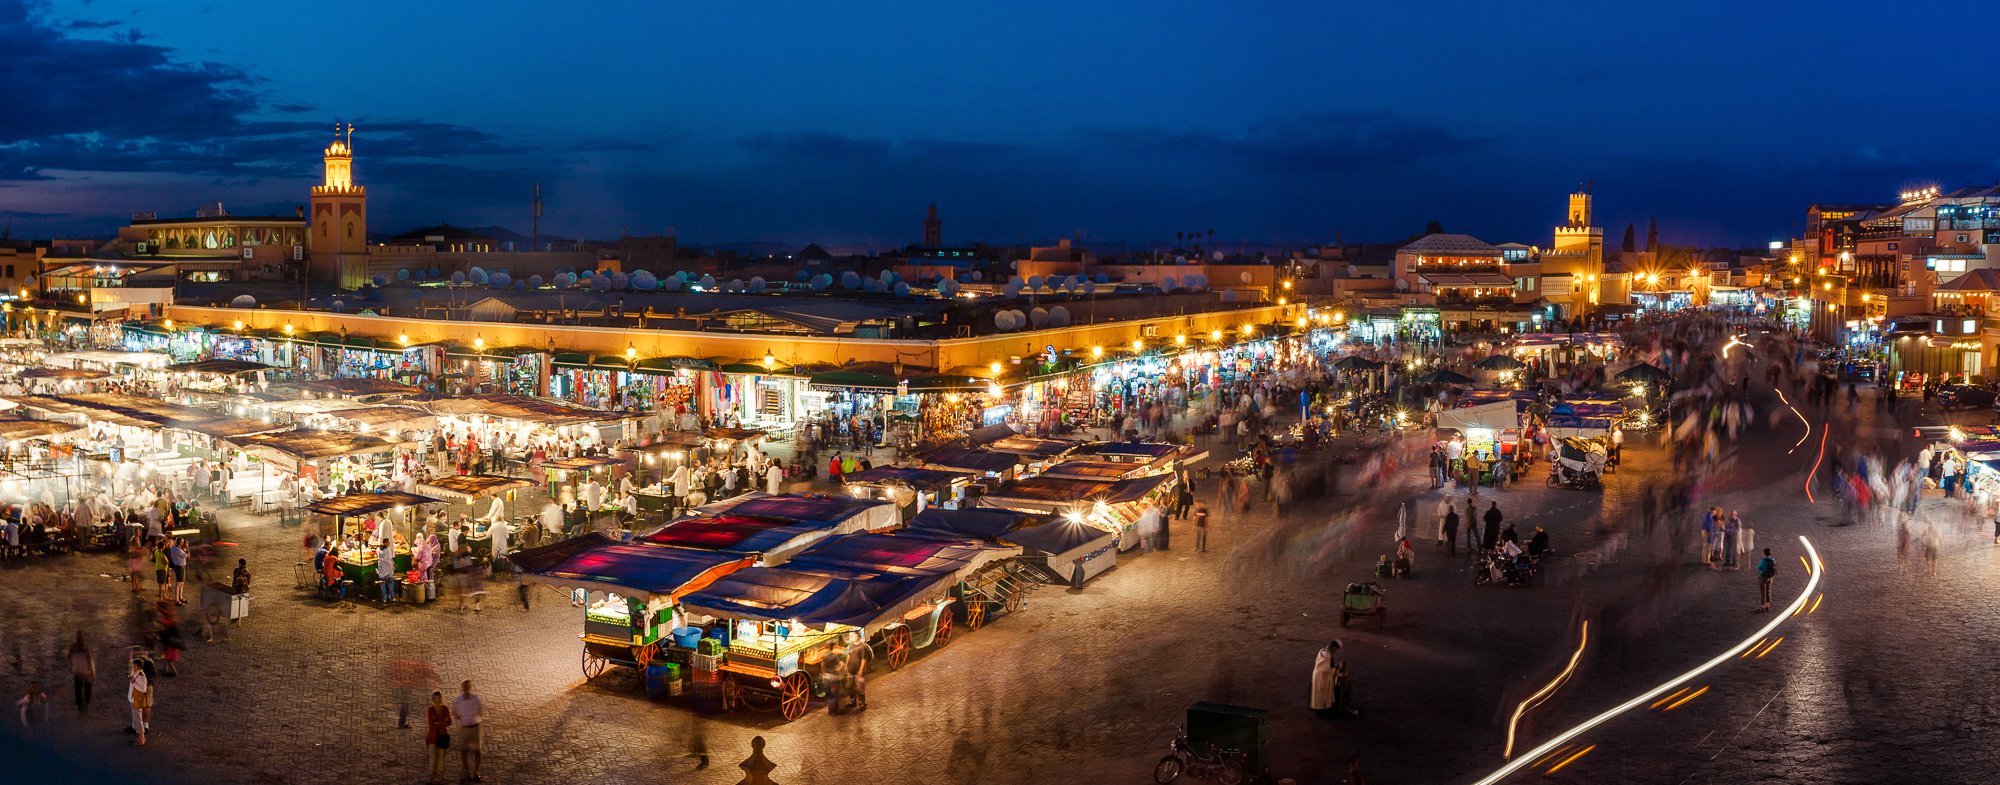 Марокко. Ночной базар в Марракеше